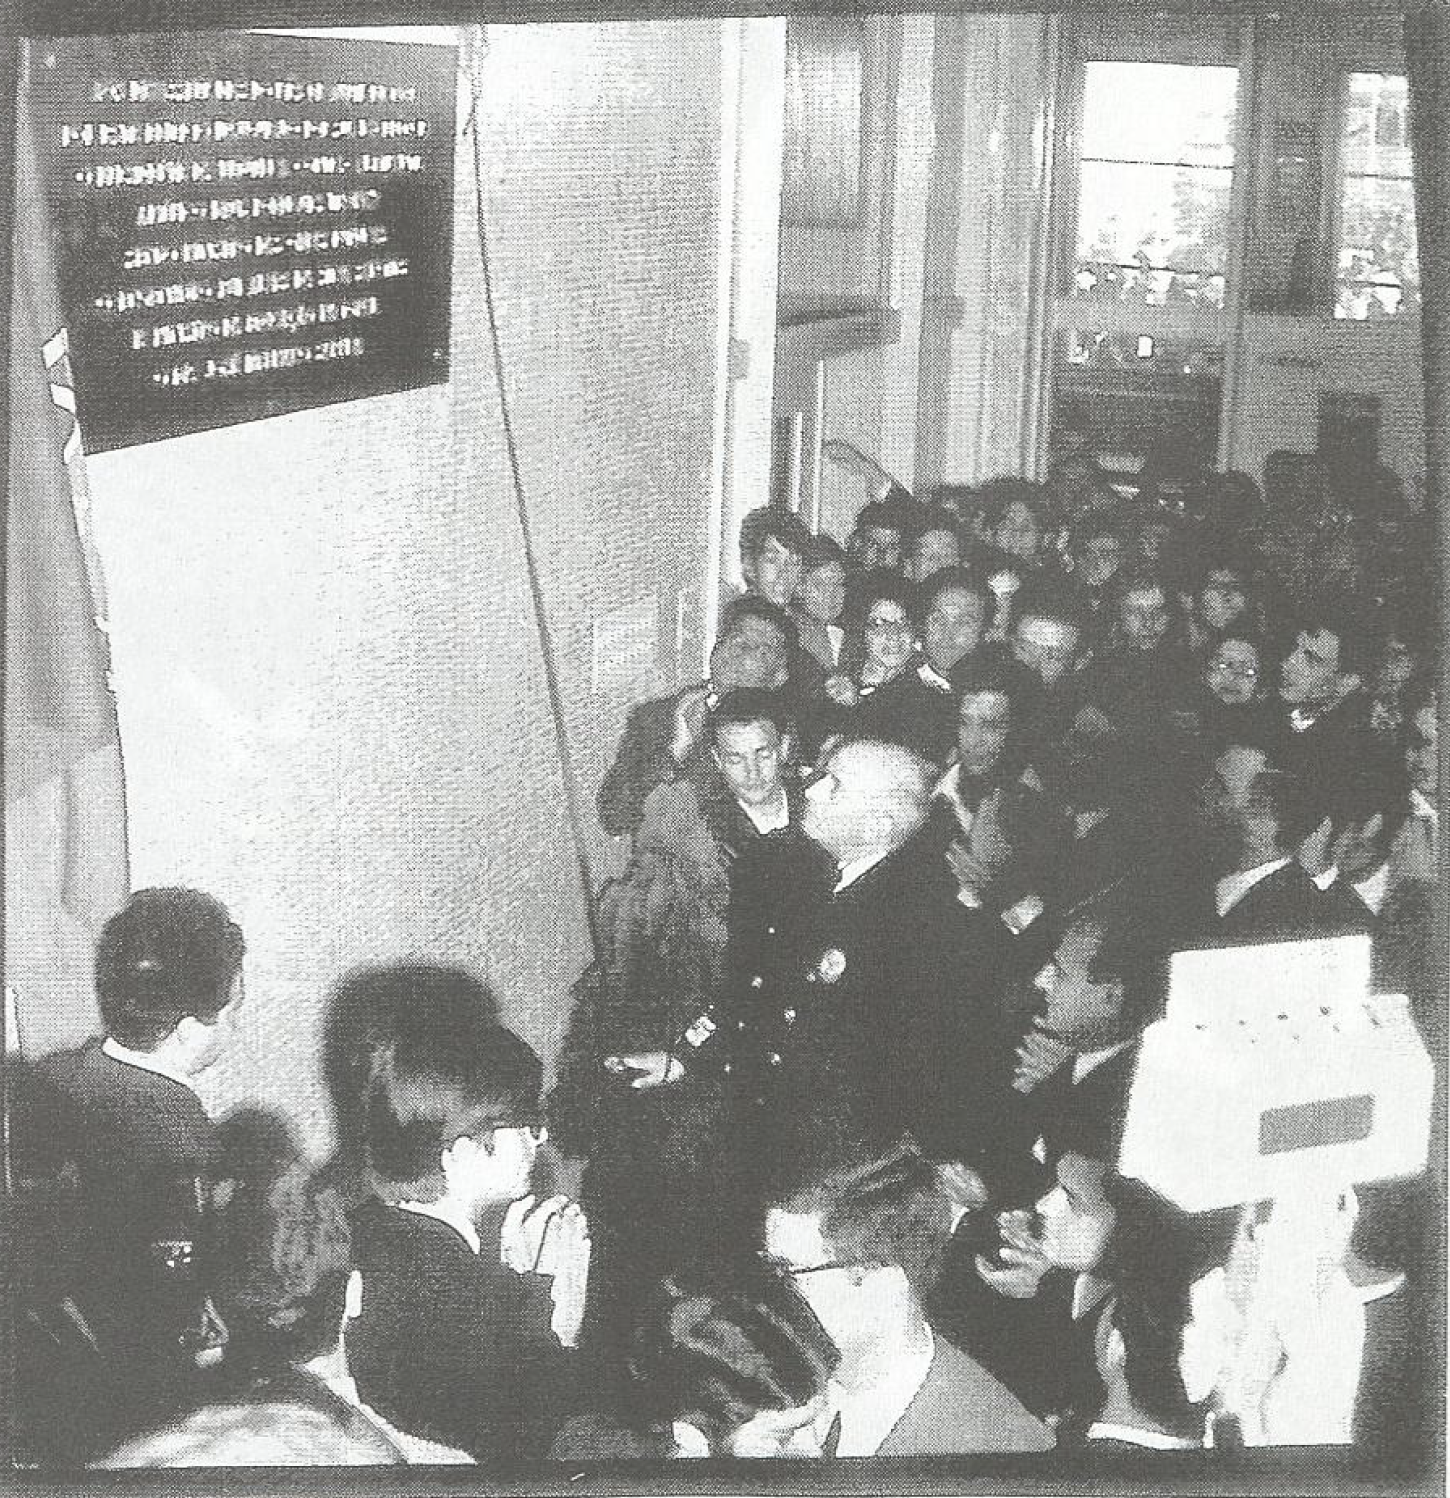 Crise académica Coimbra 1969